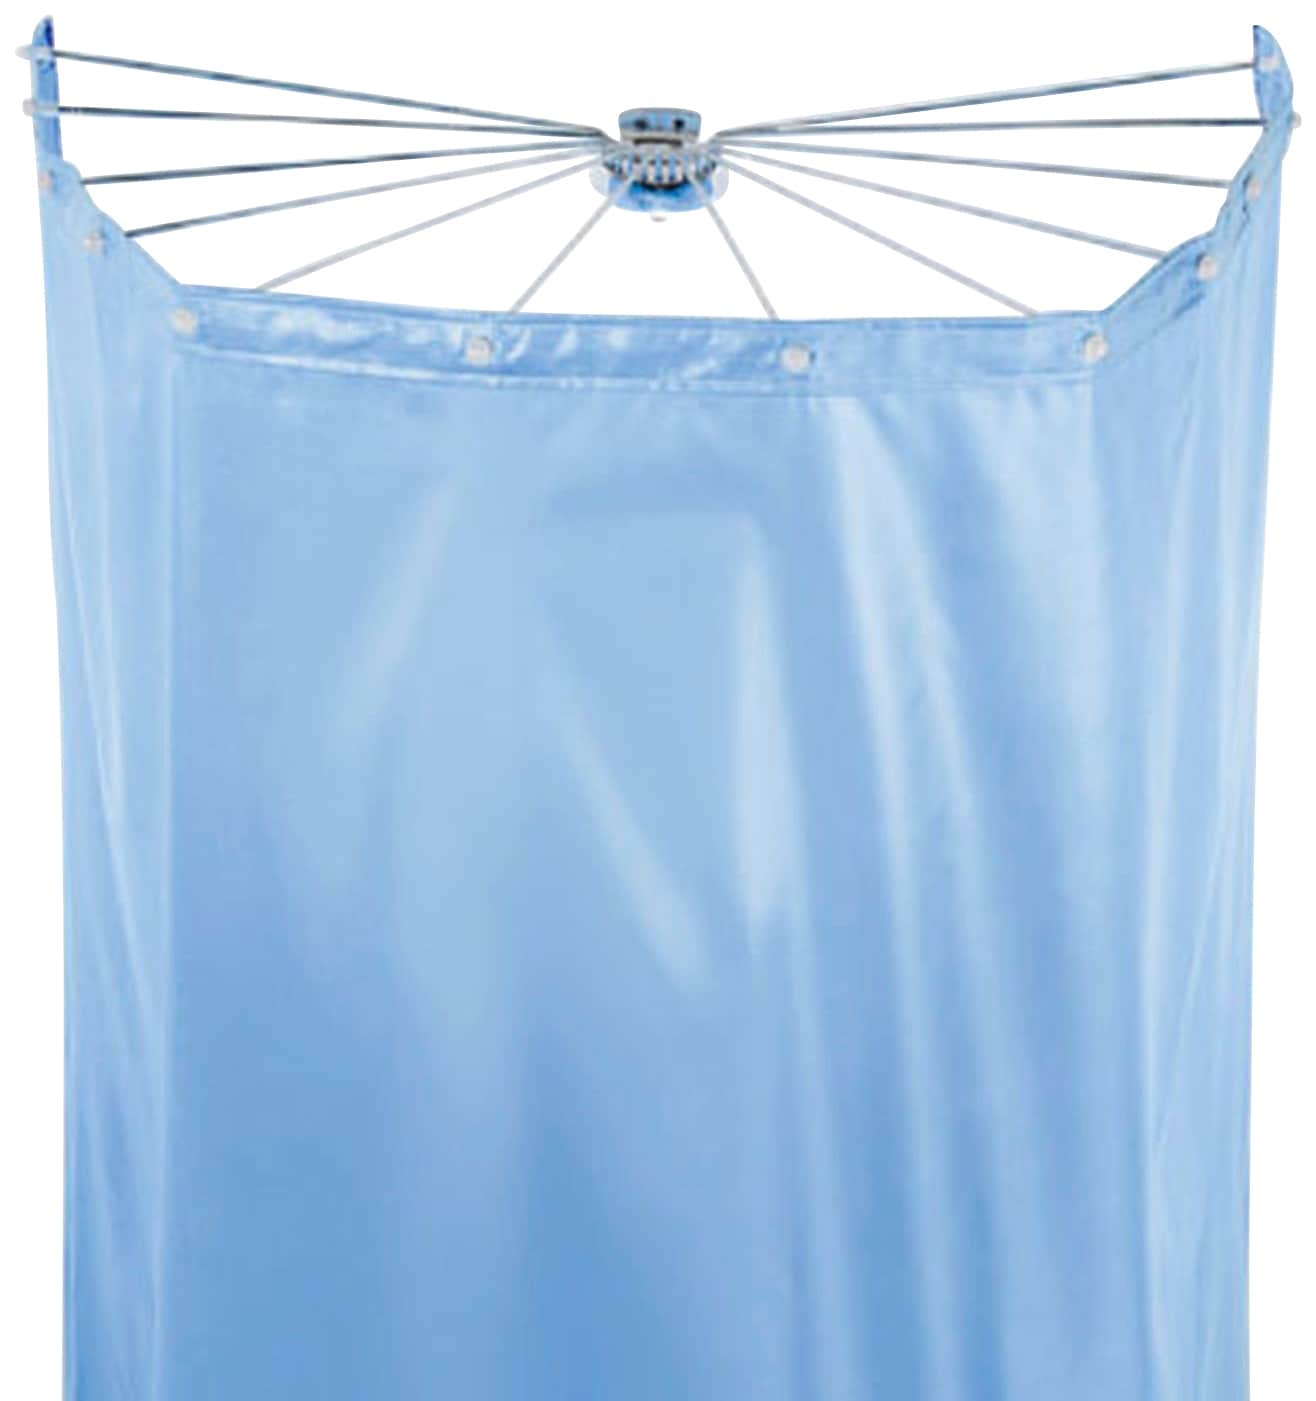 Duschschirm »Ombrella«, (Set), mit 8 Ösen, white, 200x170 cm; Duschspinne und Vorhang